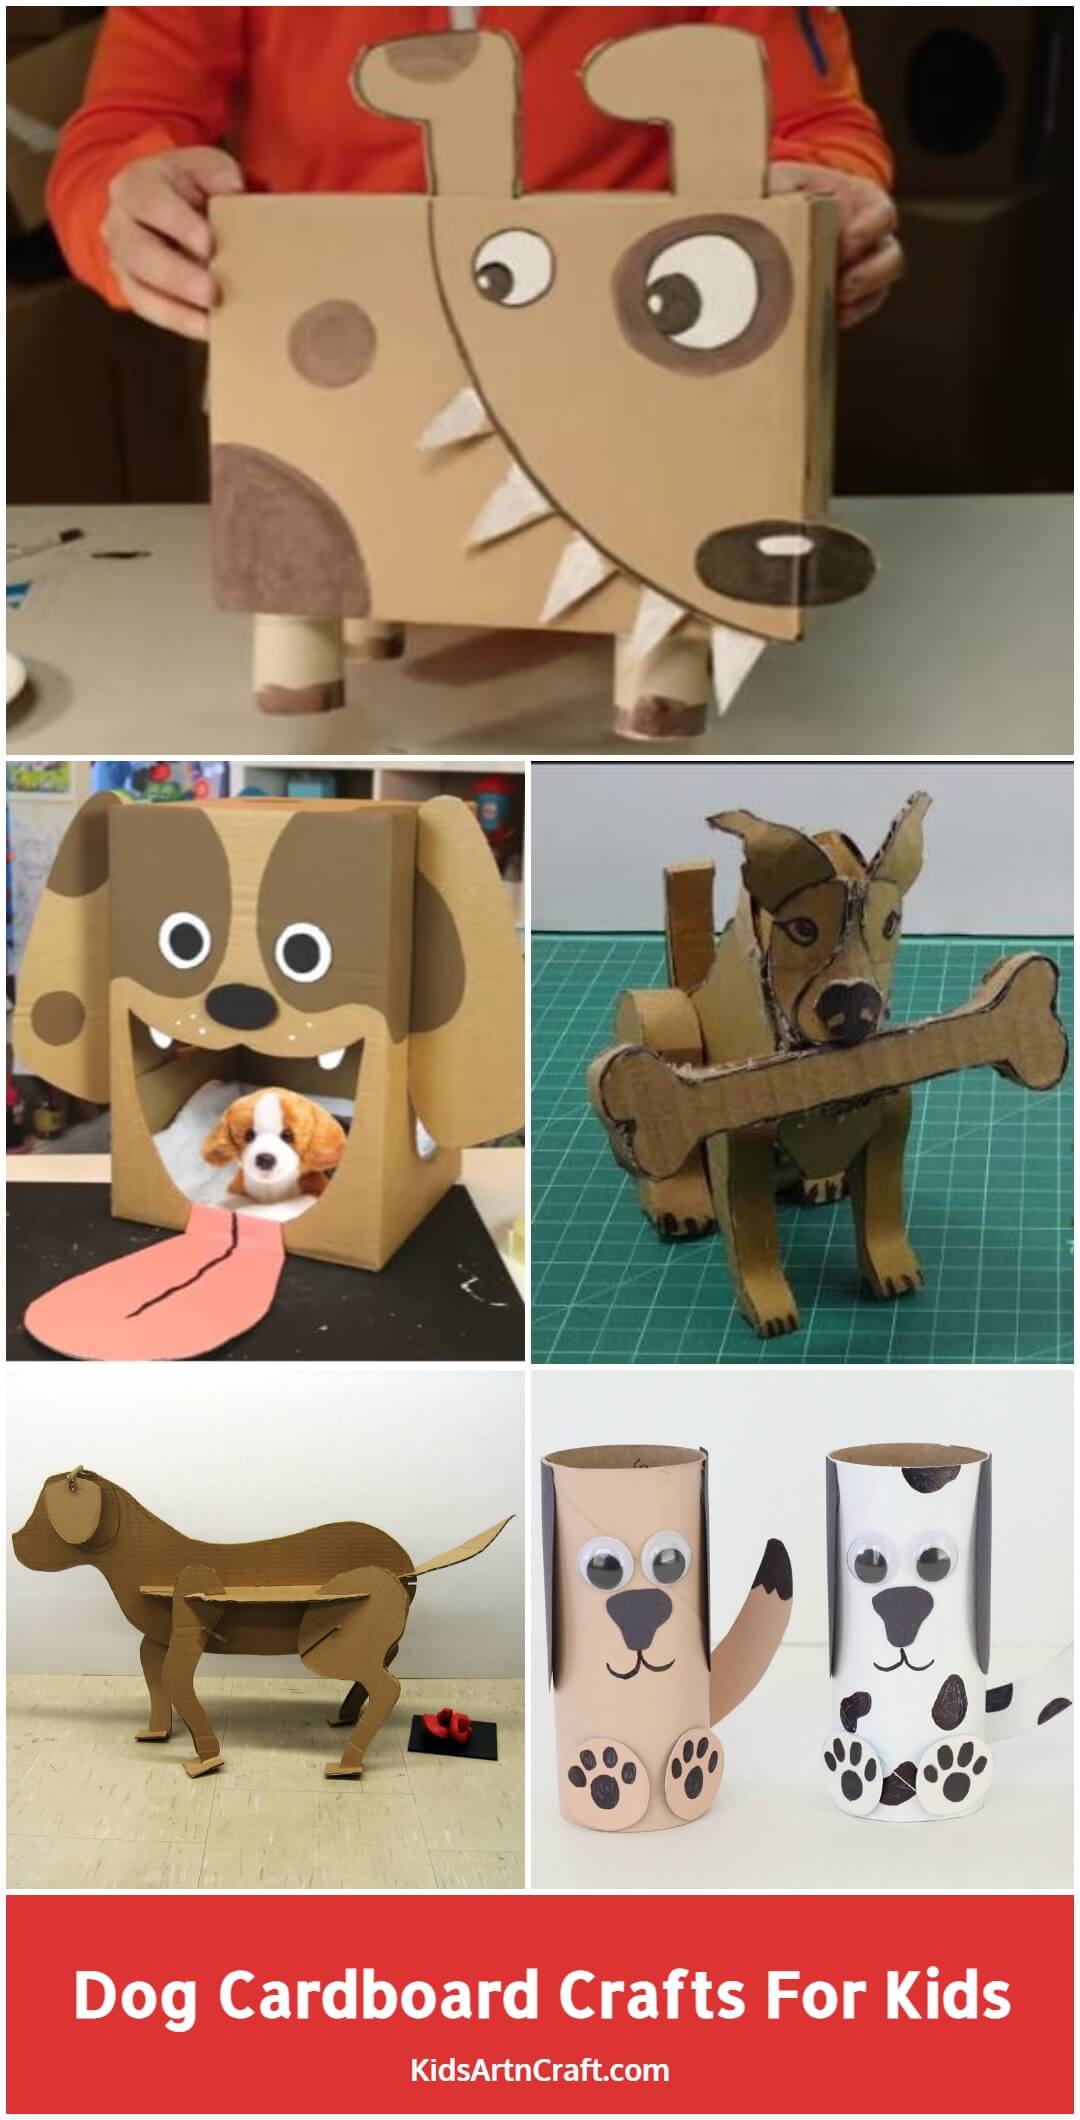 Dog Cardboard Crafts For Kids